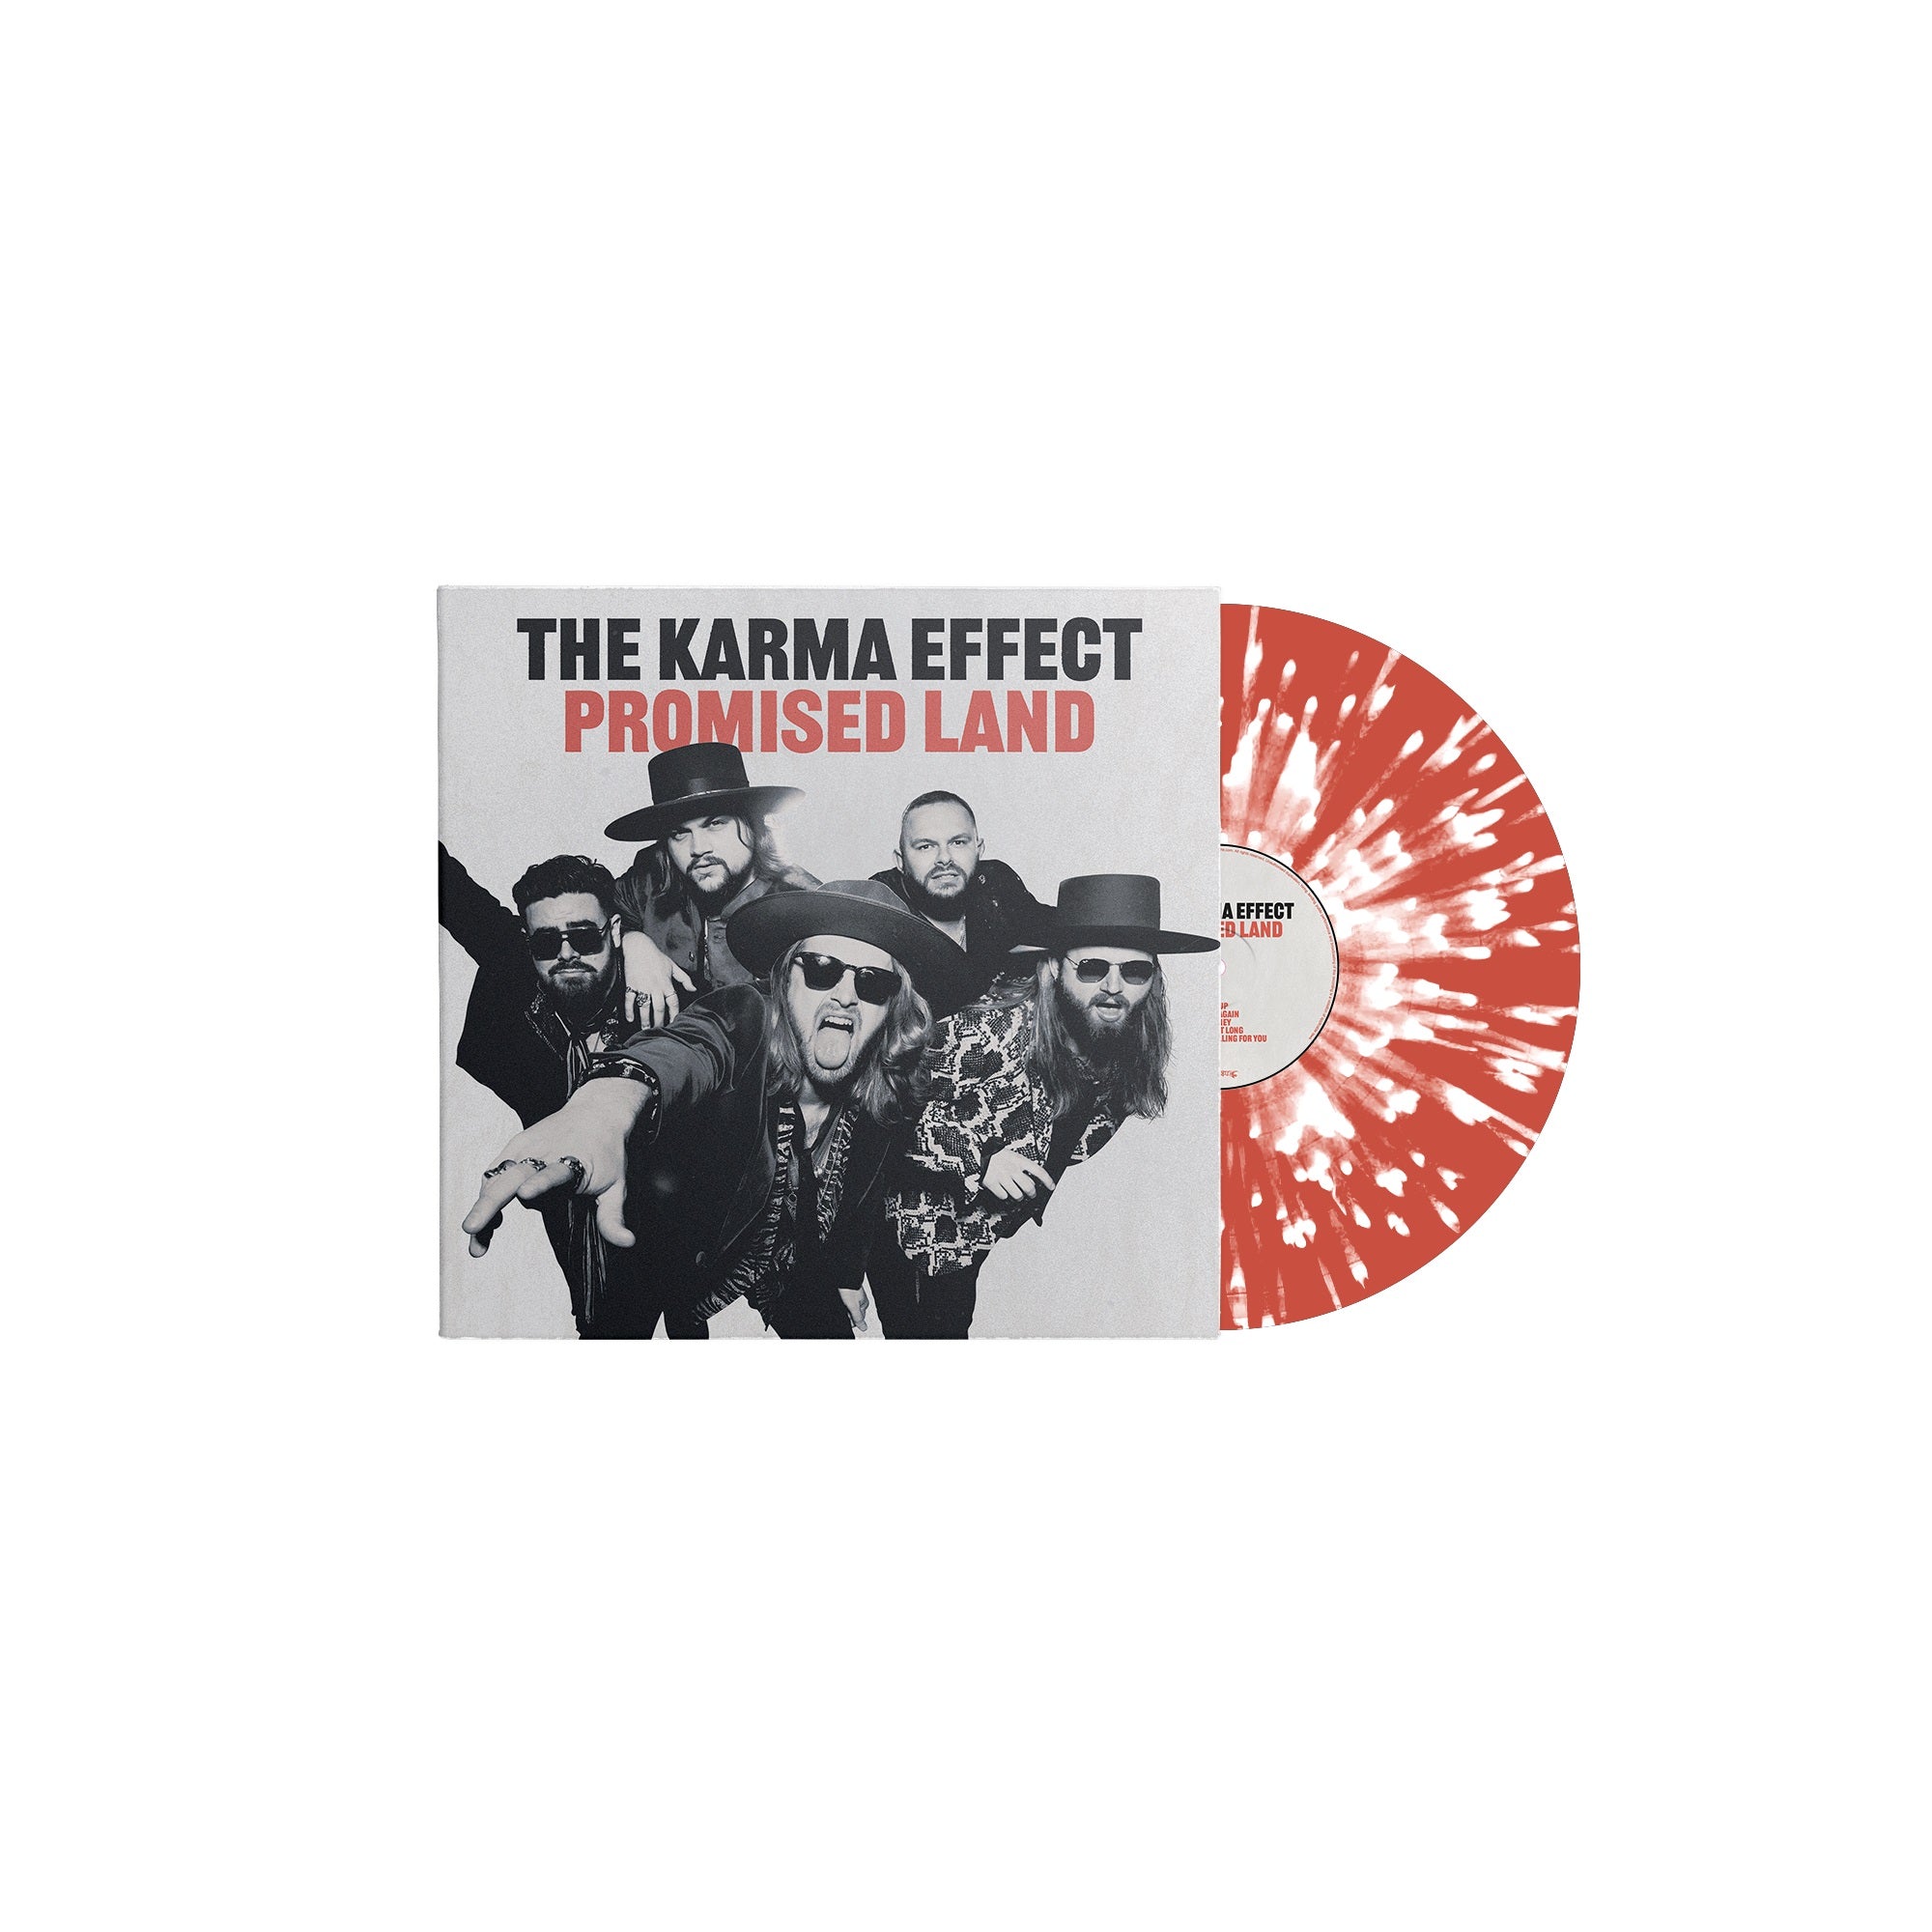 The Karma Effect "Promised Land" Red w/ Heavy White Splatter Vinyl